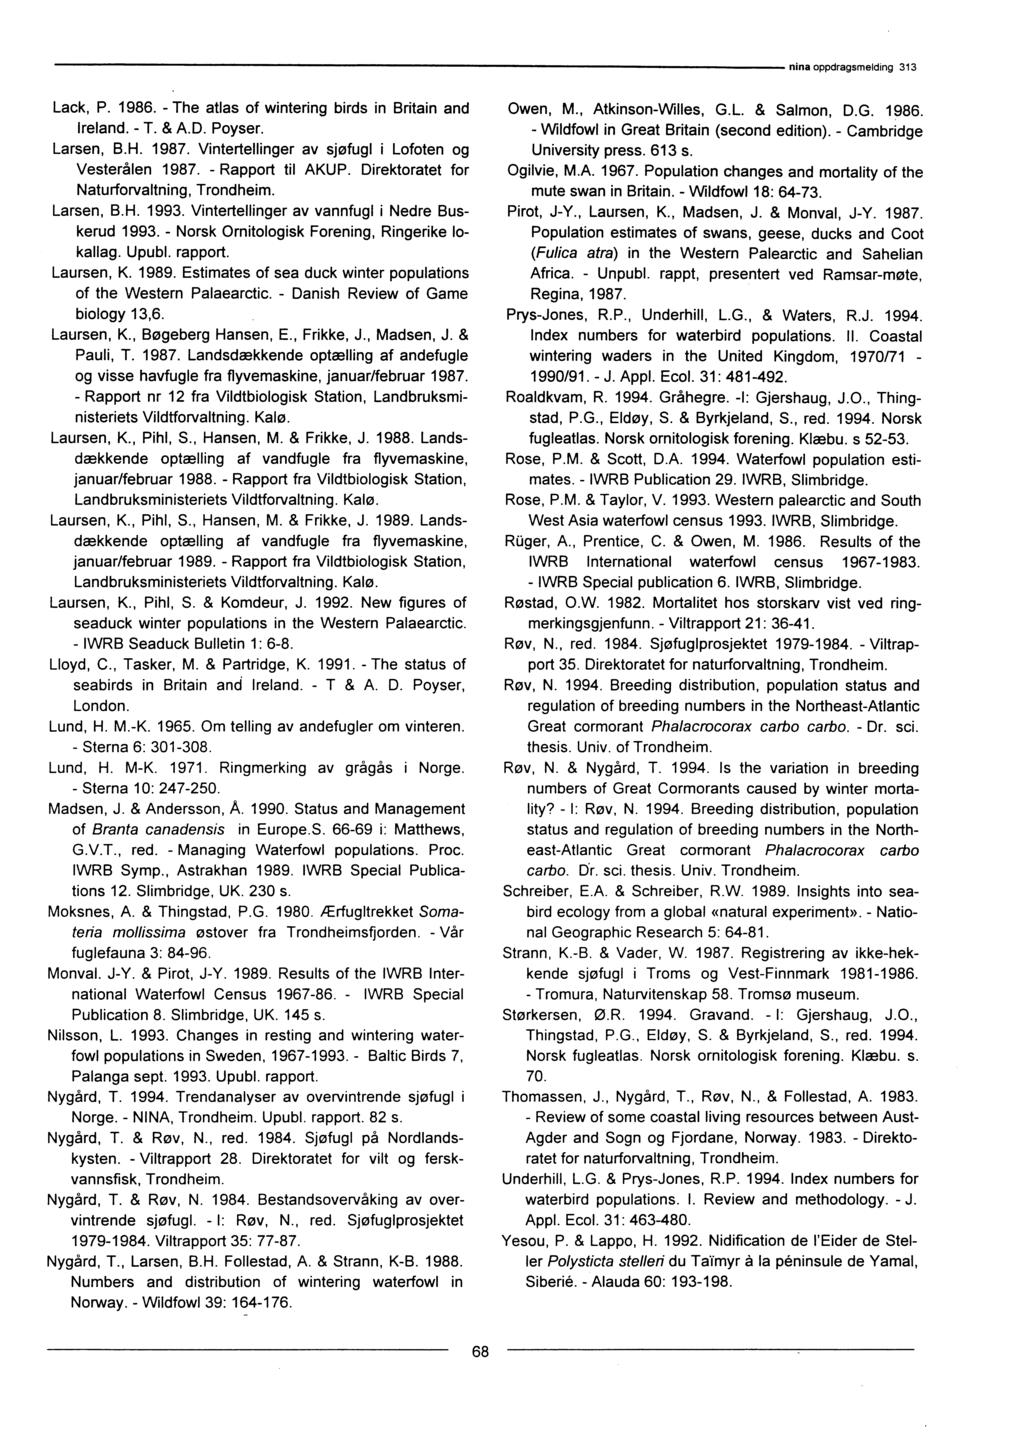 Lack, P. 1986. - The atlas of wintering birds in Britain and Ireland. - T. & A.D. Poyser. Larsen, B.H. 1987. Vintertellinger av sjøfugl i Lofoten og Vesterålen 1987. - Rapport til AKUP.